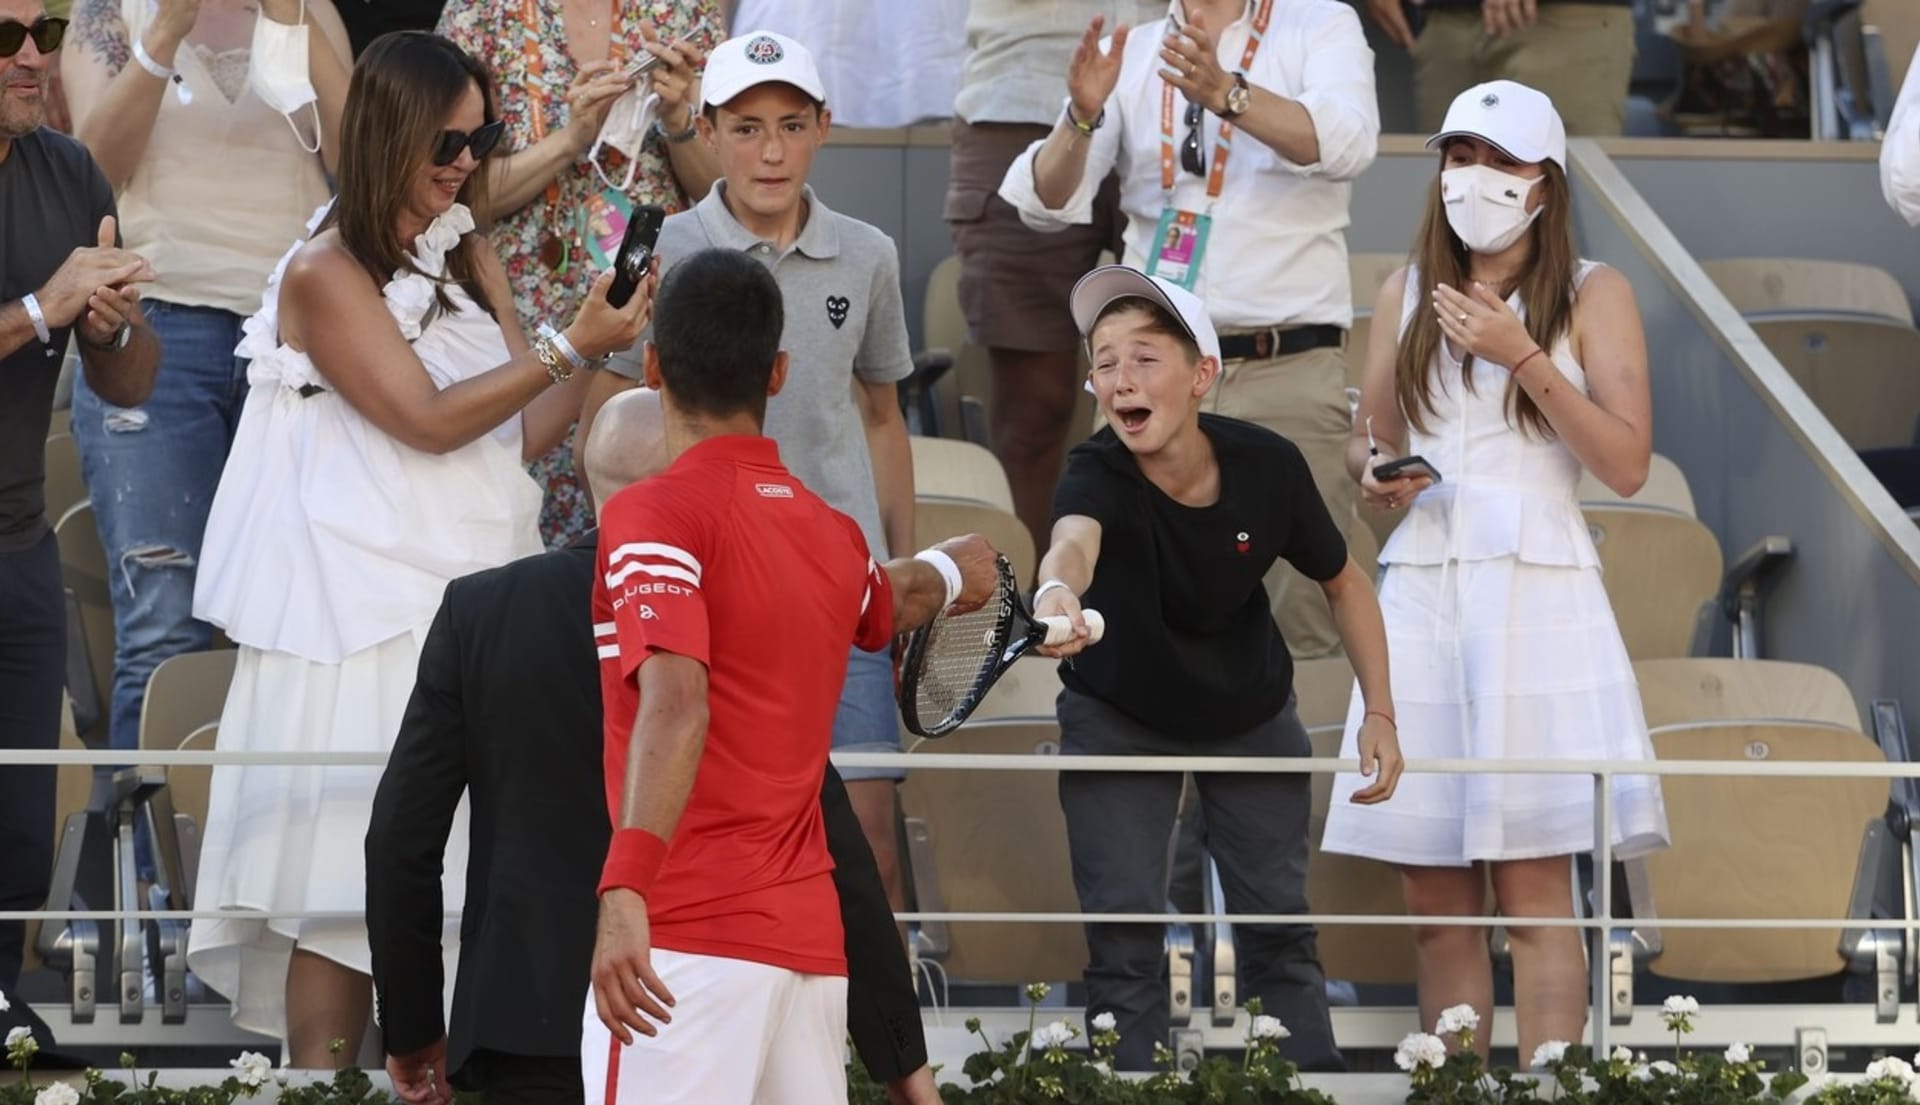 Velká radost malého fanouška, který přijímá raketu od čerstvého šampiona Roland Garros Novaka Djokoviče.